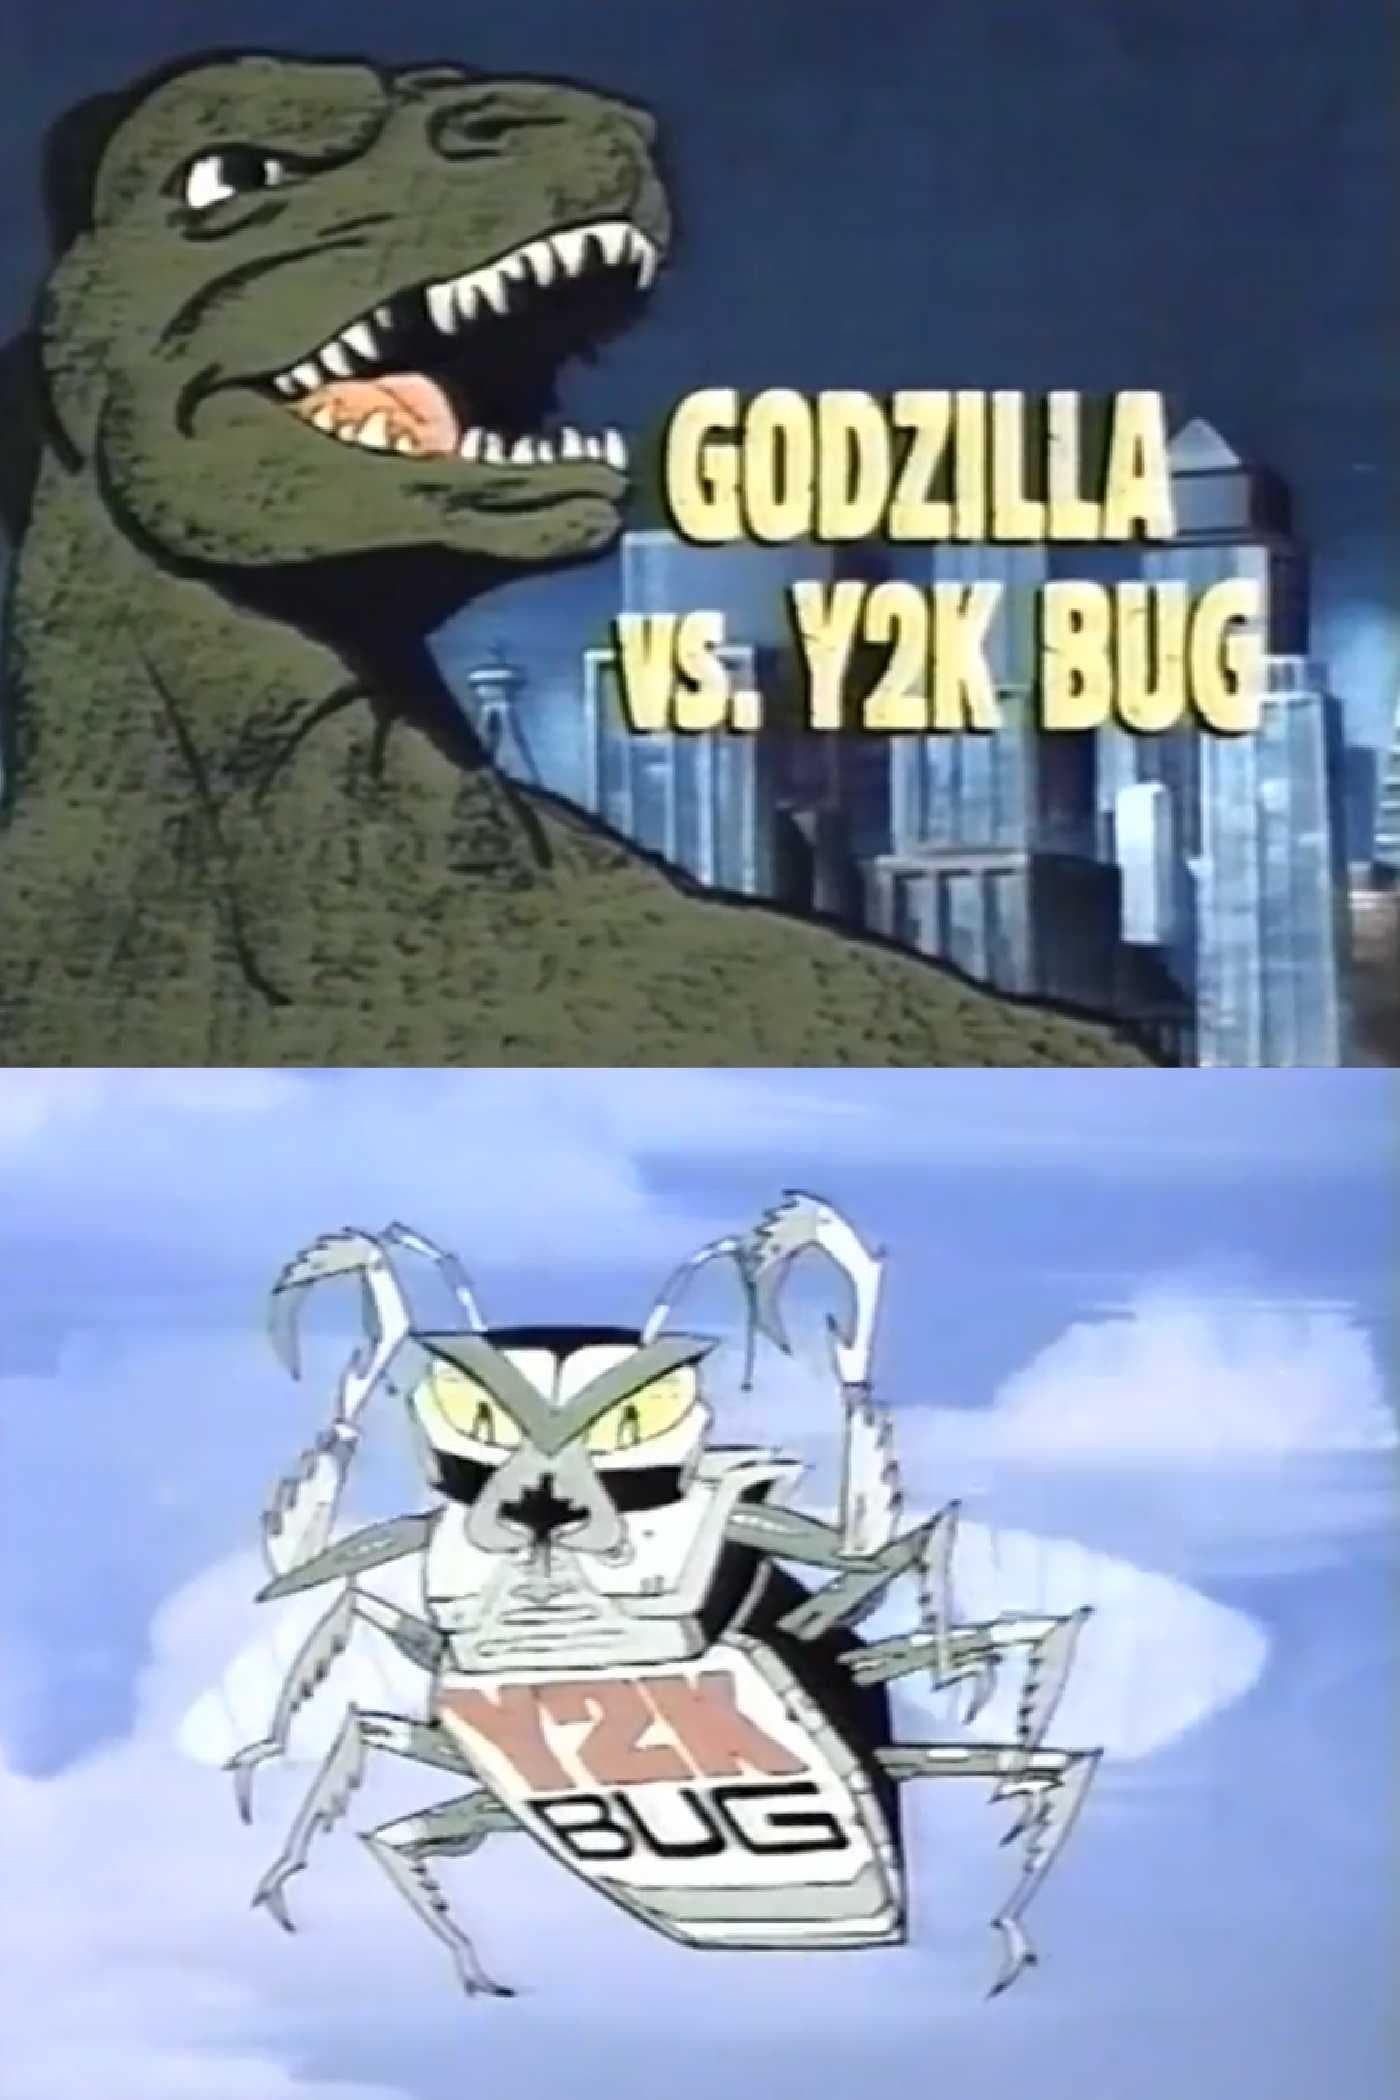 Godzilla vs. Y2K Bug